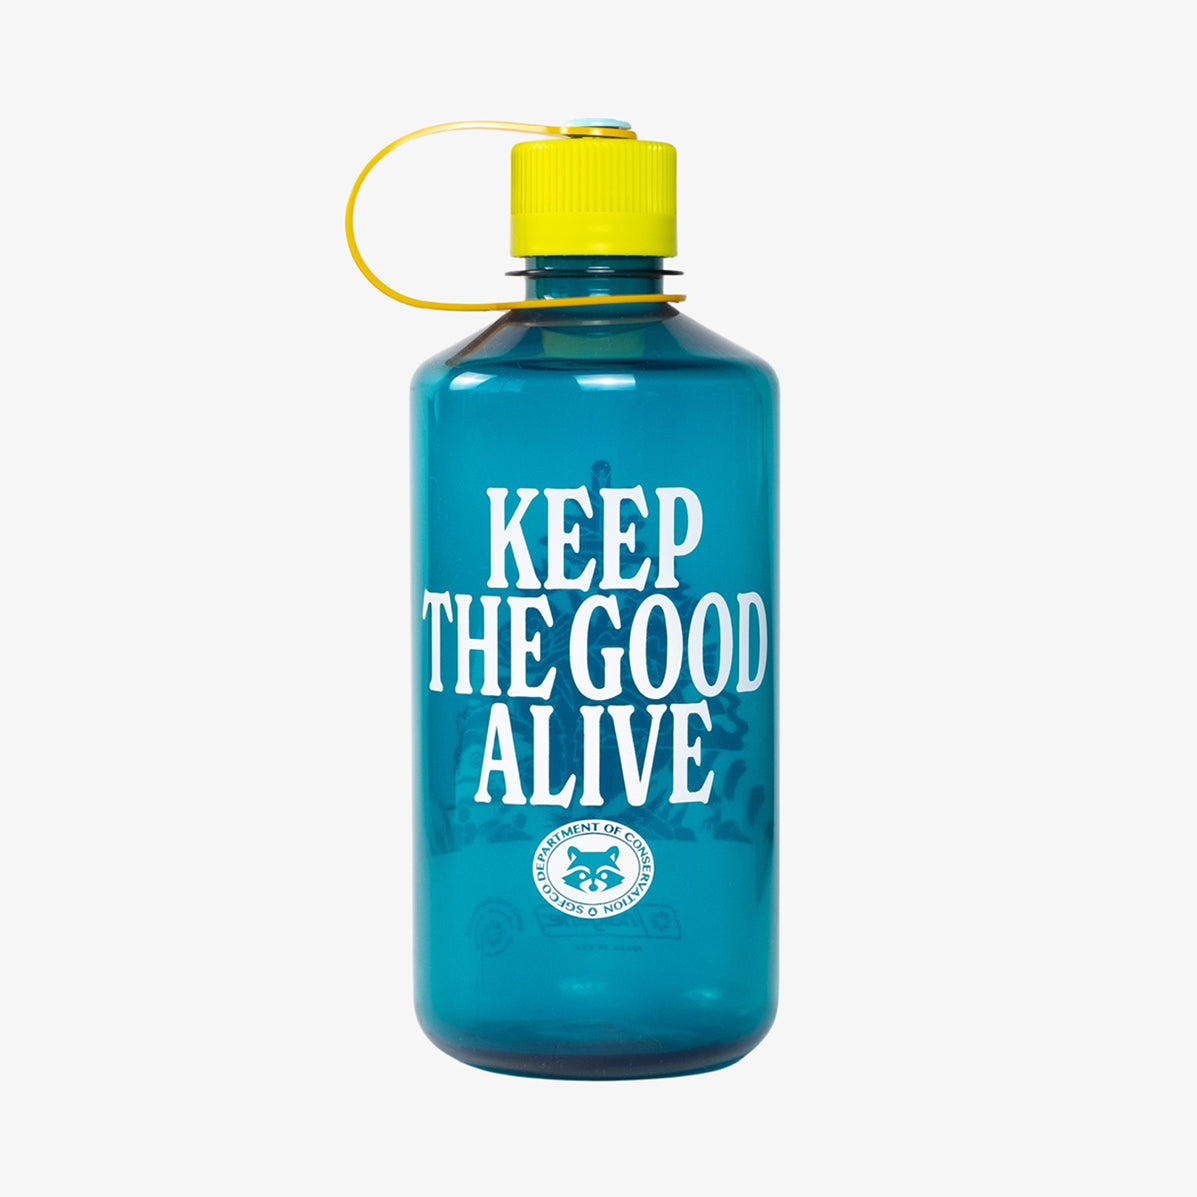 32oz Good Alive Nalgene Water Bottle - Blue